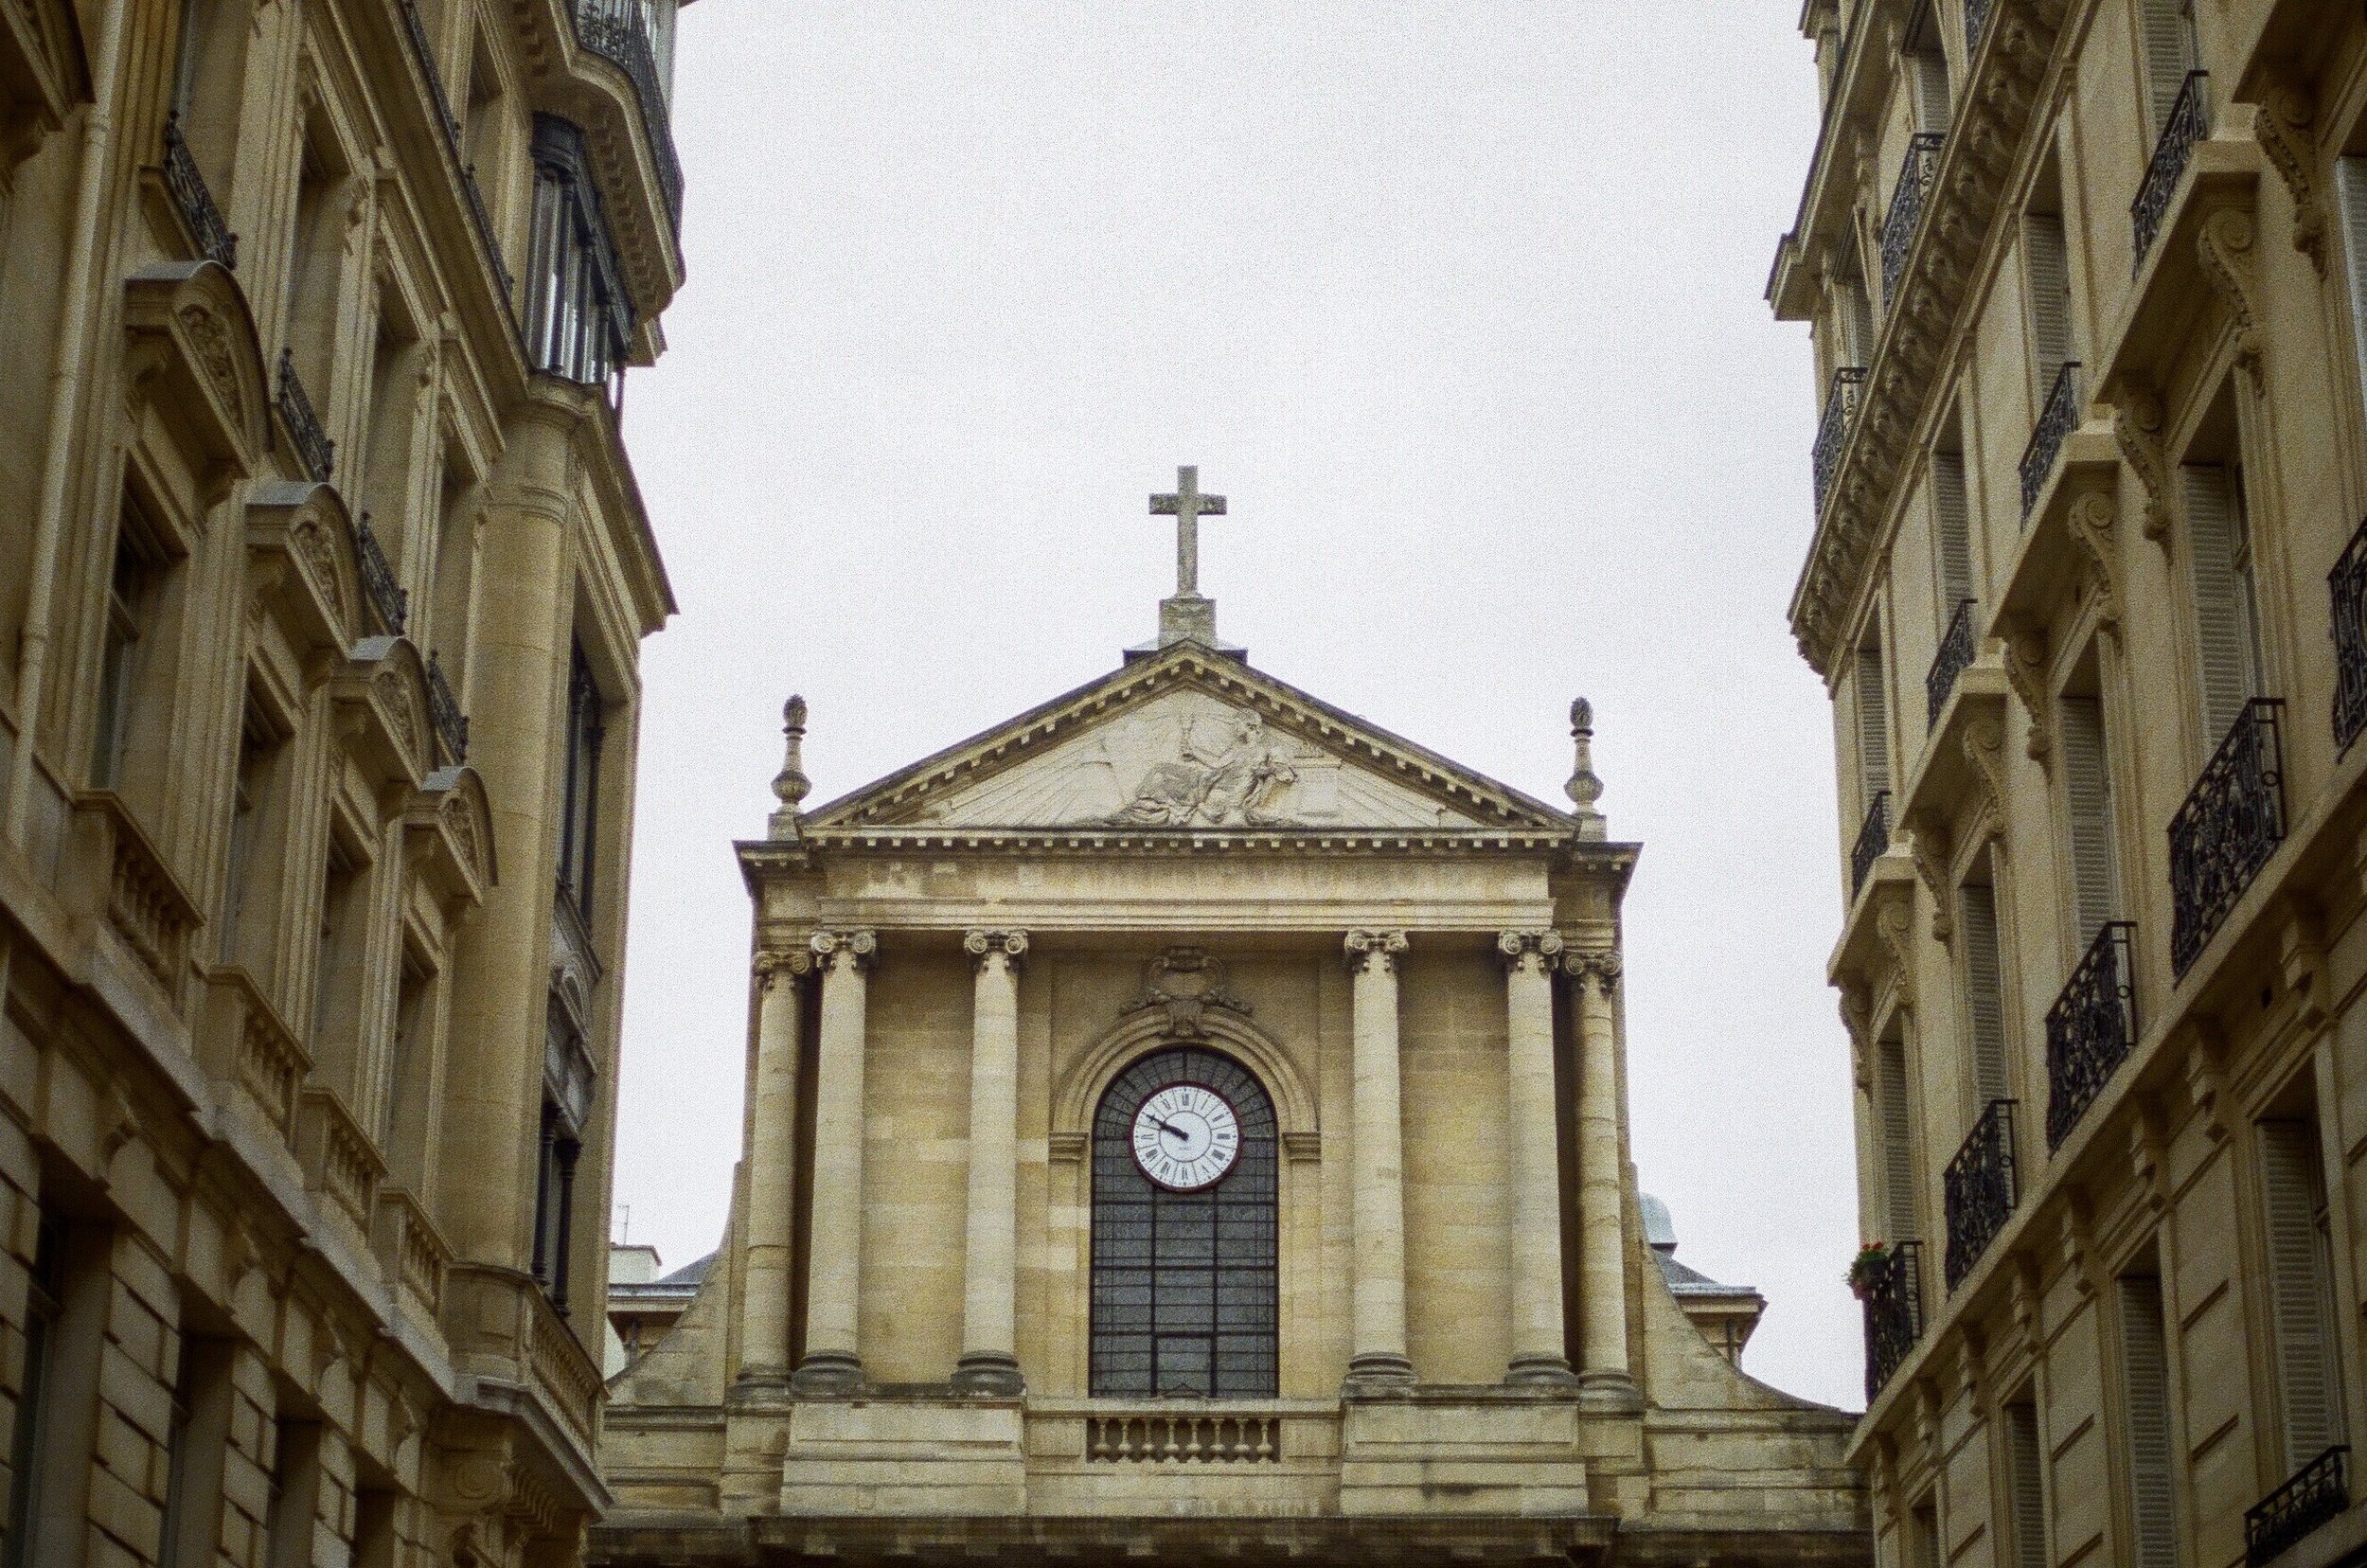   Église Saint-Thomas-d'Aquin, Tuesday, March 17th.  